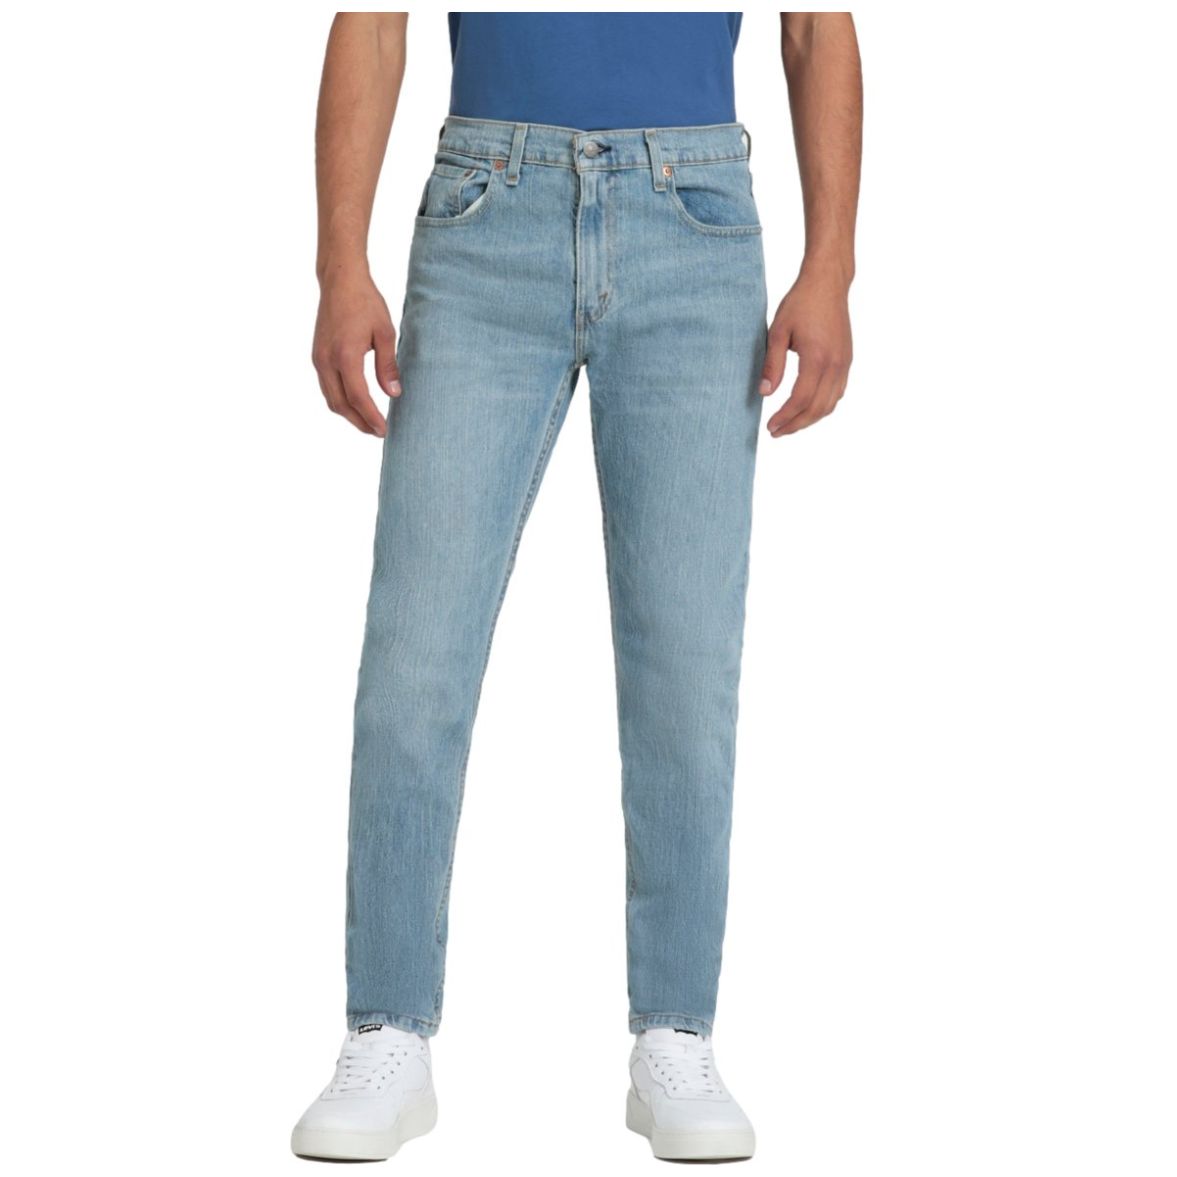 Pantalones Levis 512 Slim Taper Azul de Hombre